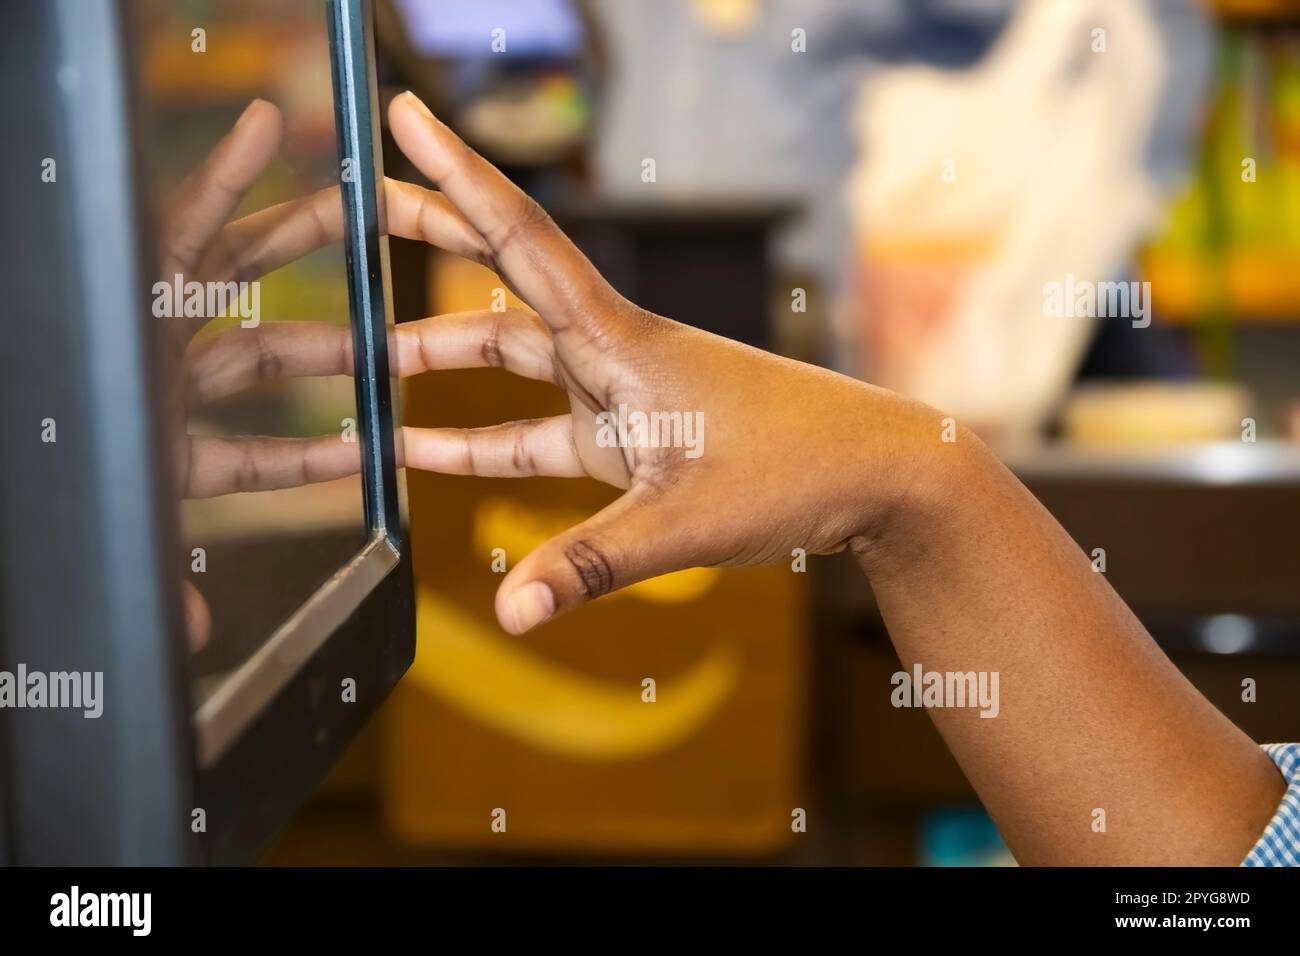 Main de fille noire caissière en utilisant l'écran tactile caisse avec arrière-plan flou bokeh - reflet de la main dans l'écran Banque D'Images